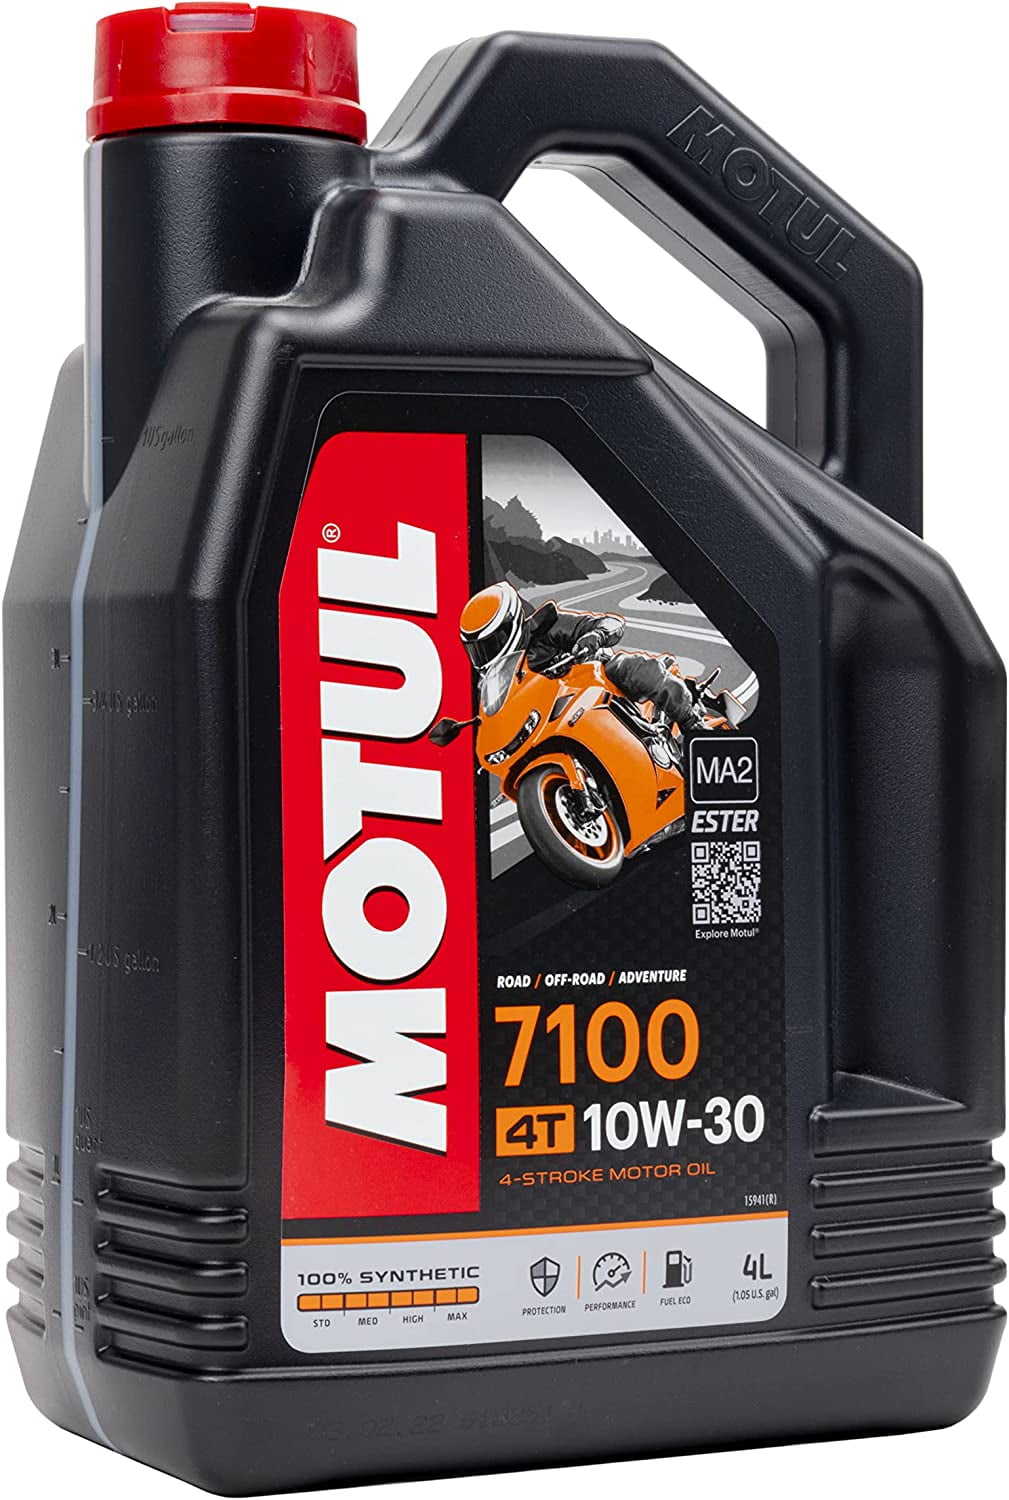 Motul 104092 Set of 6 7100 4T 10W-40 Motor Oil 1-Gallon Bottles